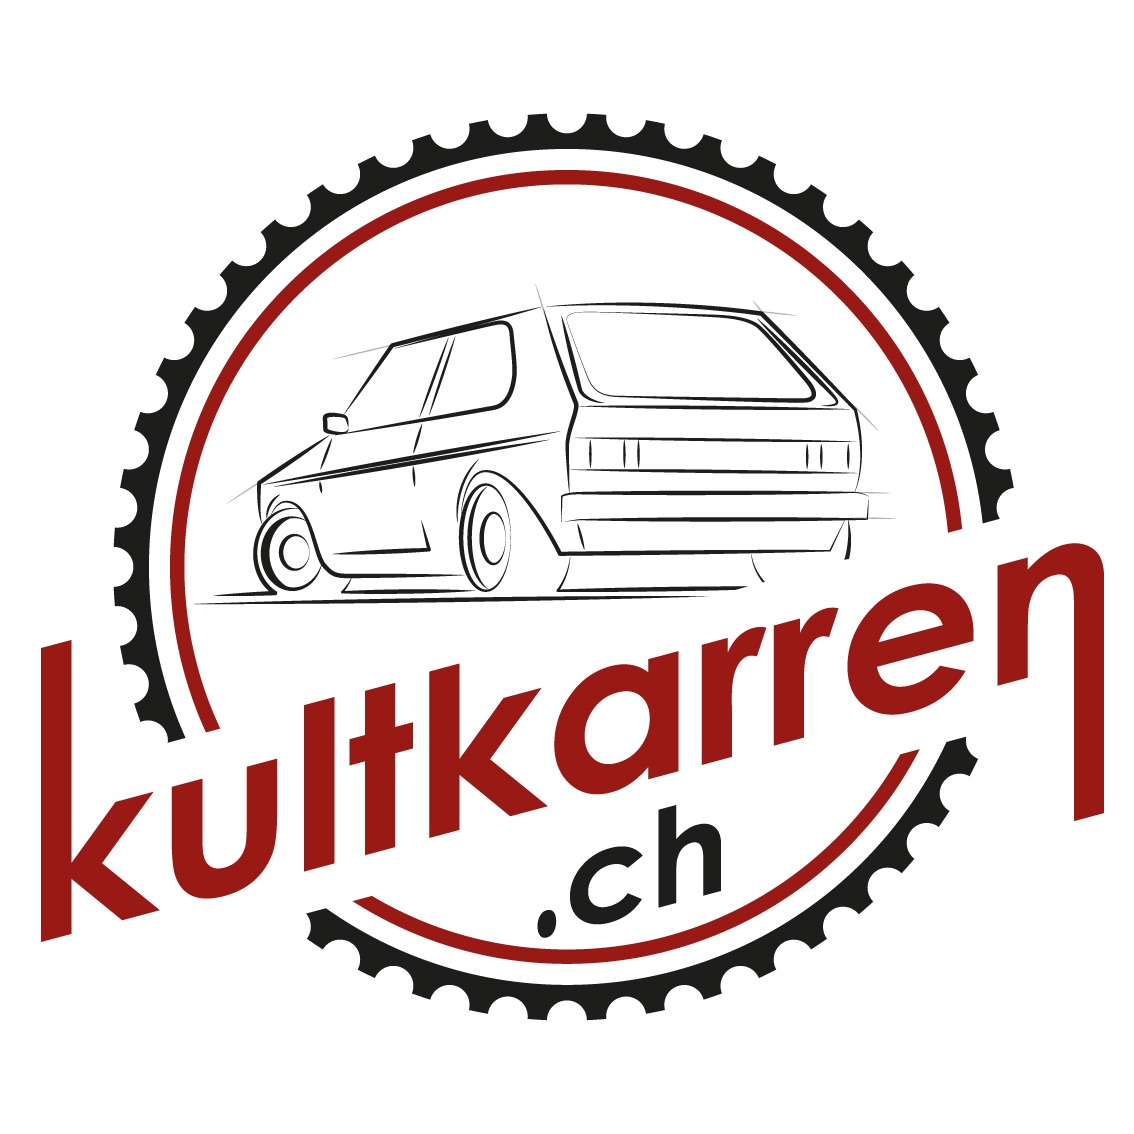 Kultkarren.ch